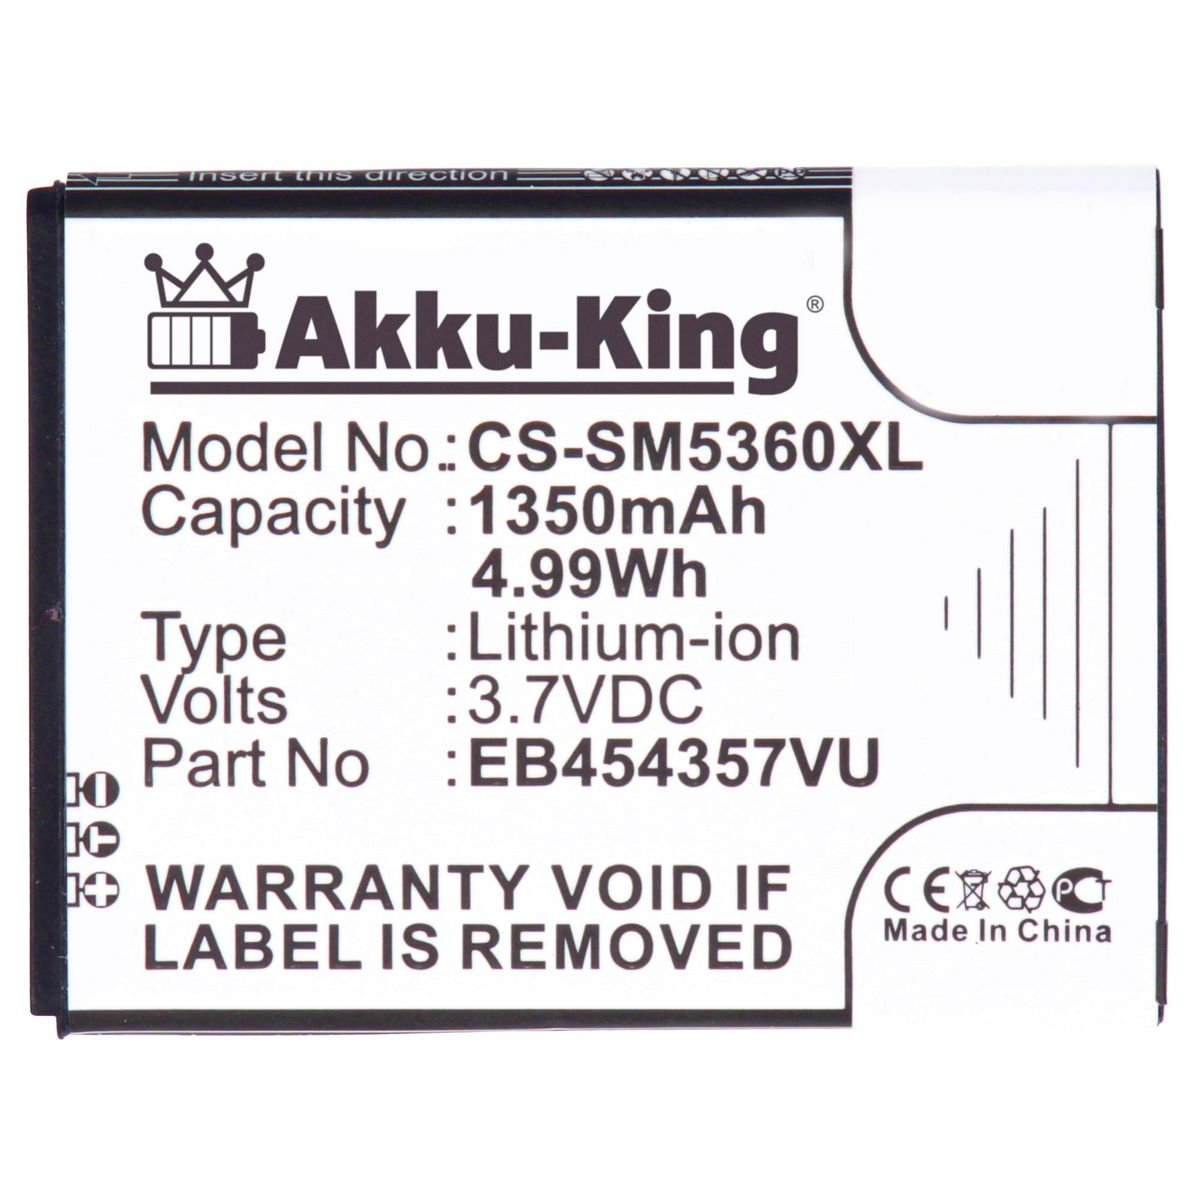 AKKU-KING Akku Handy-Akku, EB454357VU 3.7 Samsung kompatibel 1350mAh Volt, Li-Ion mit